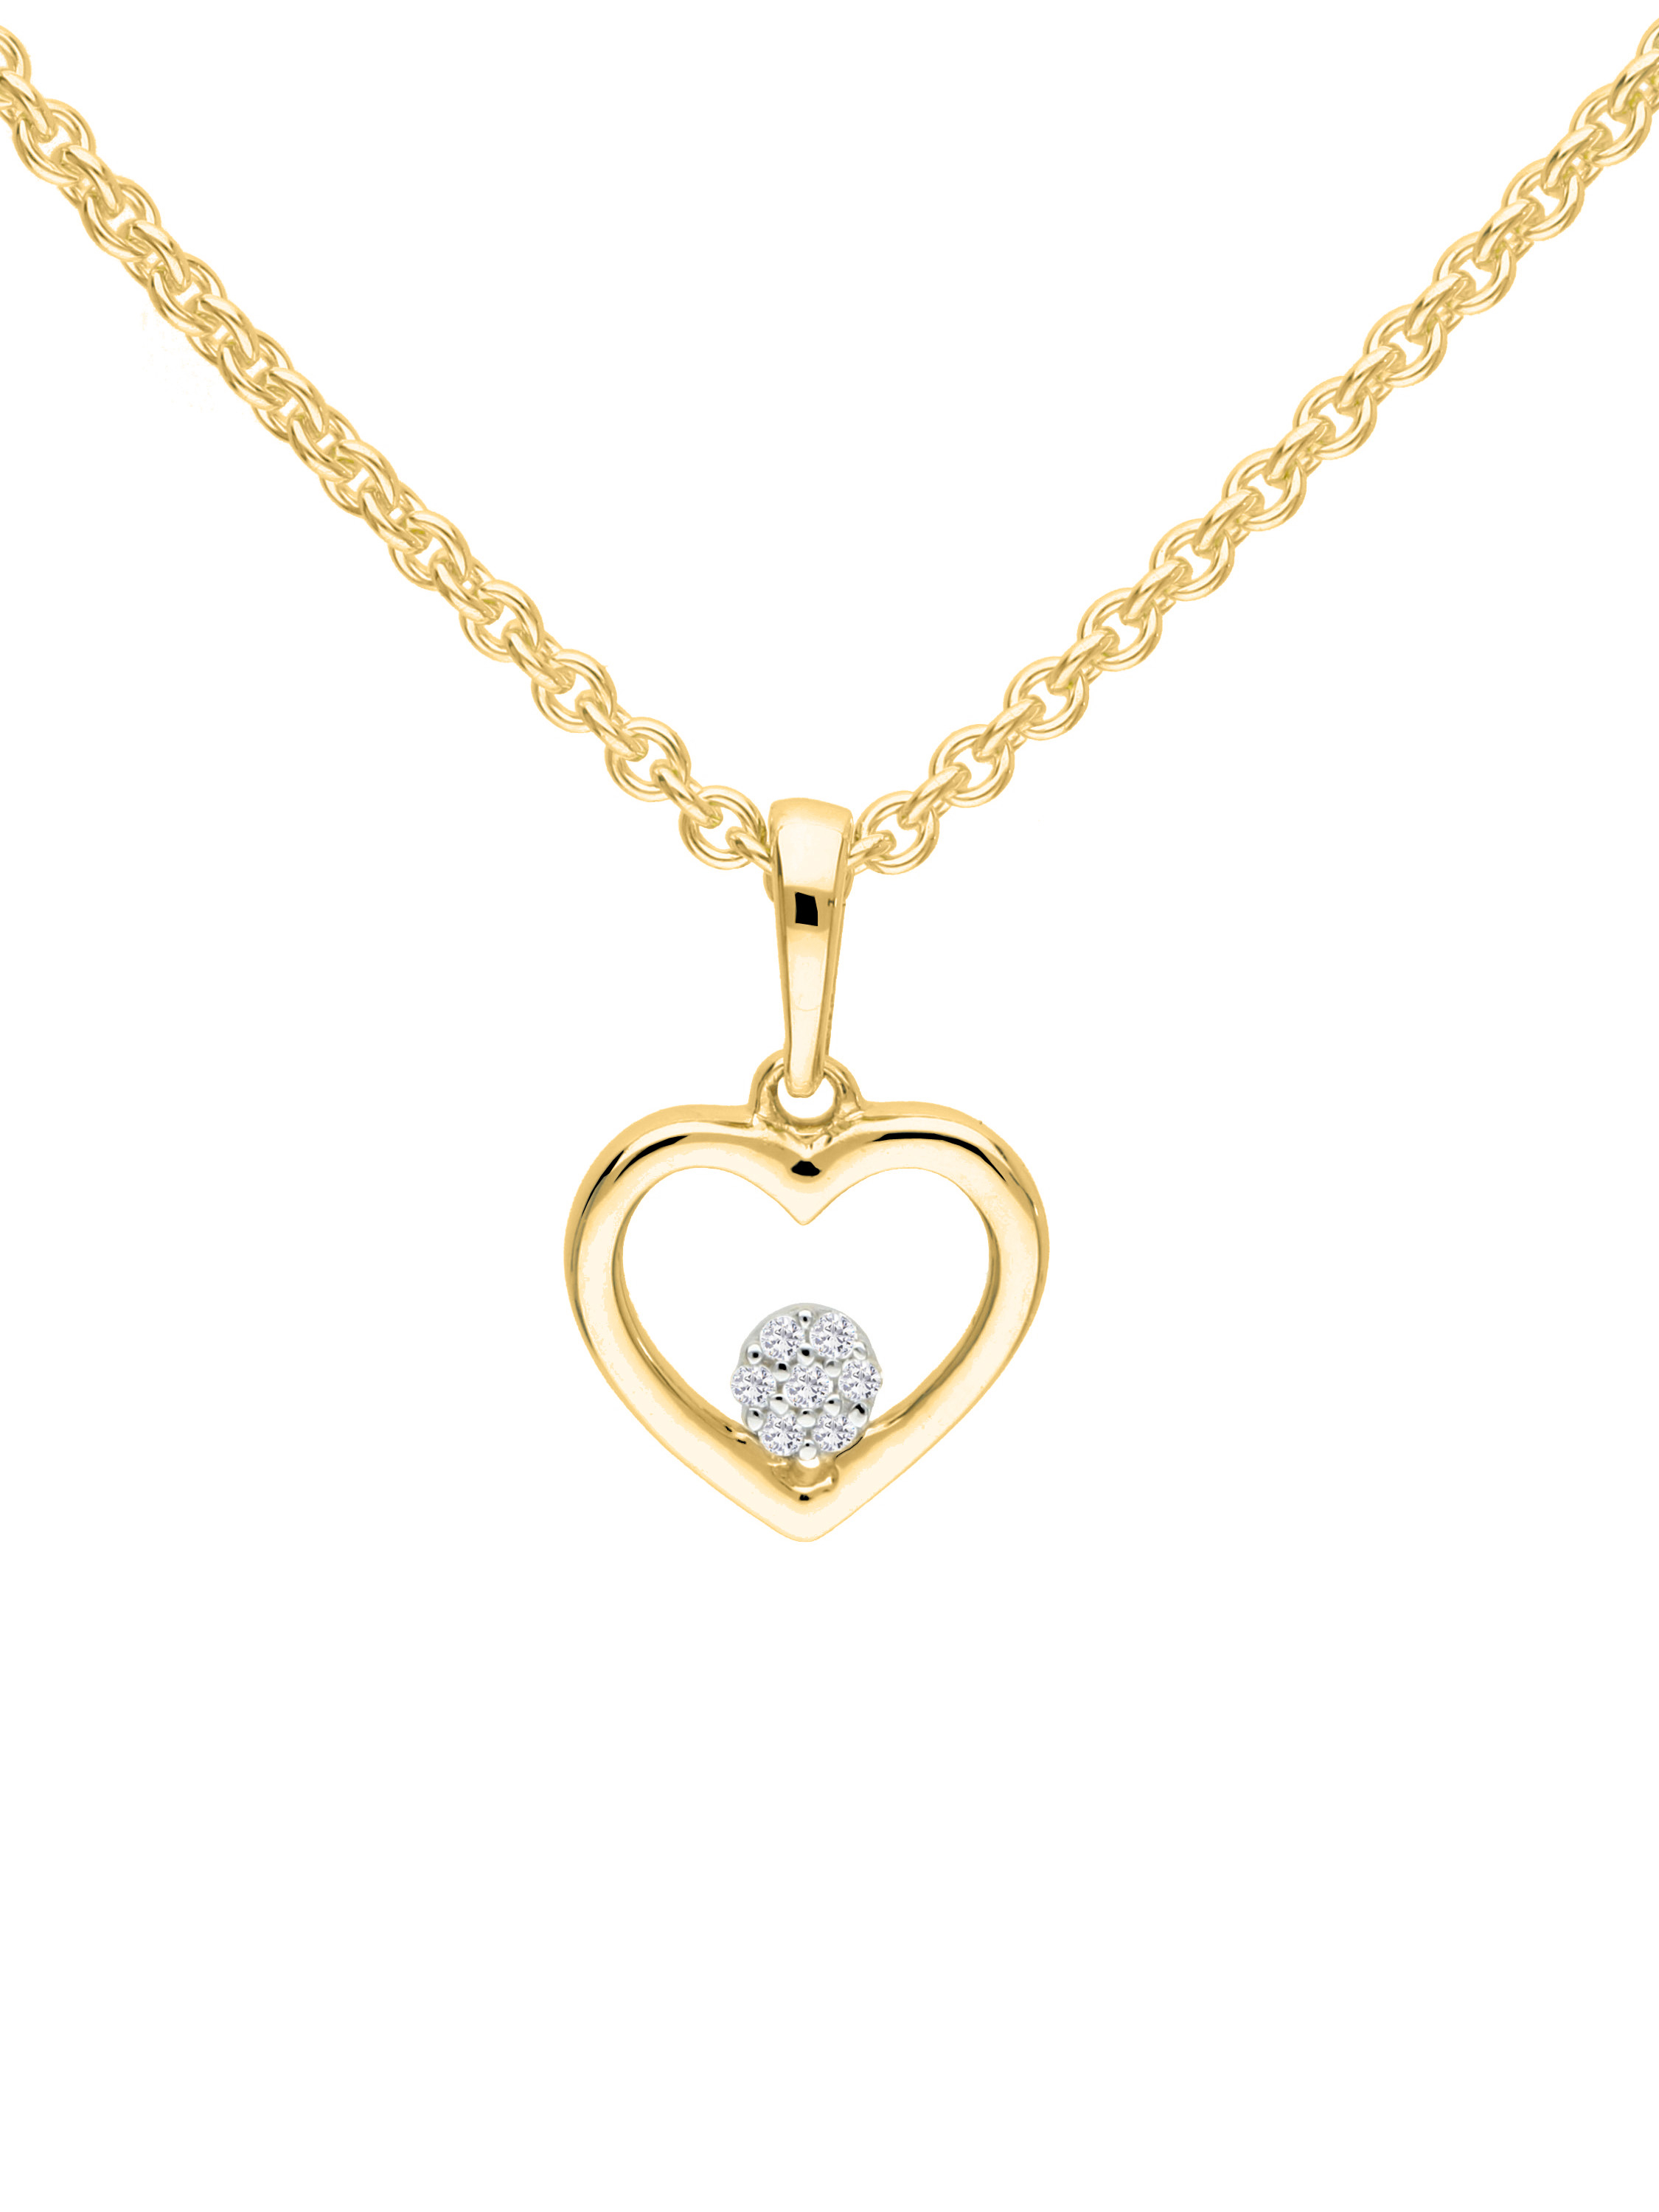 Chamia - Damen Herzanhänger mit Diamanten 585 Gold - 0,02ct.